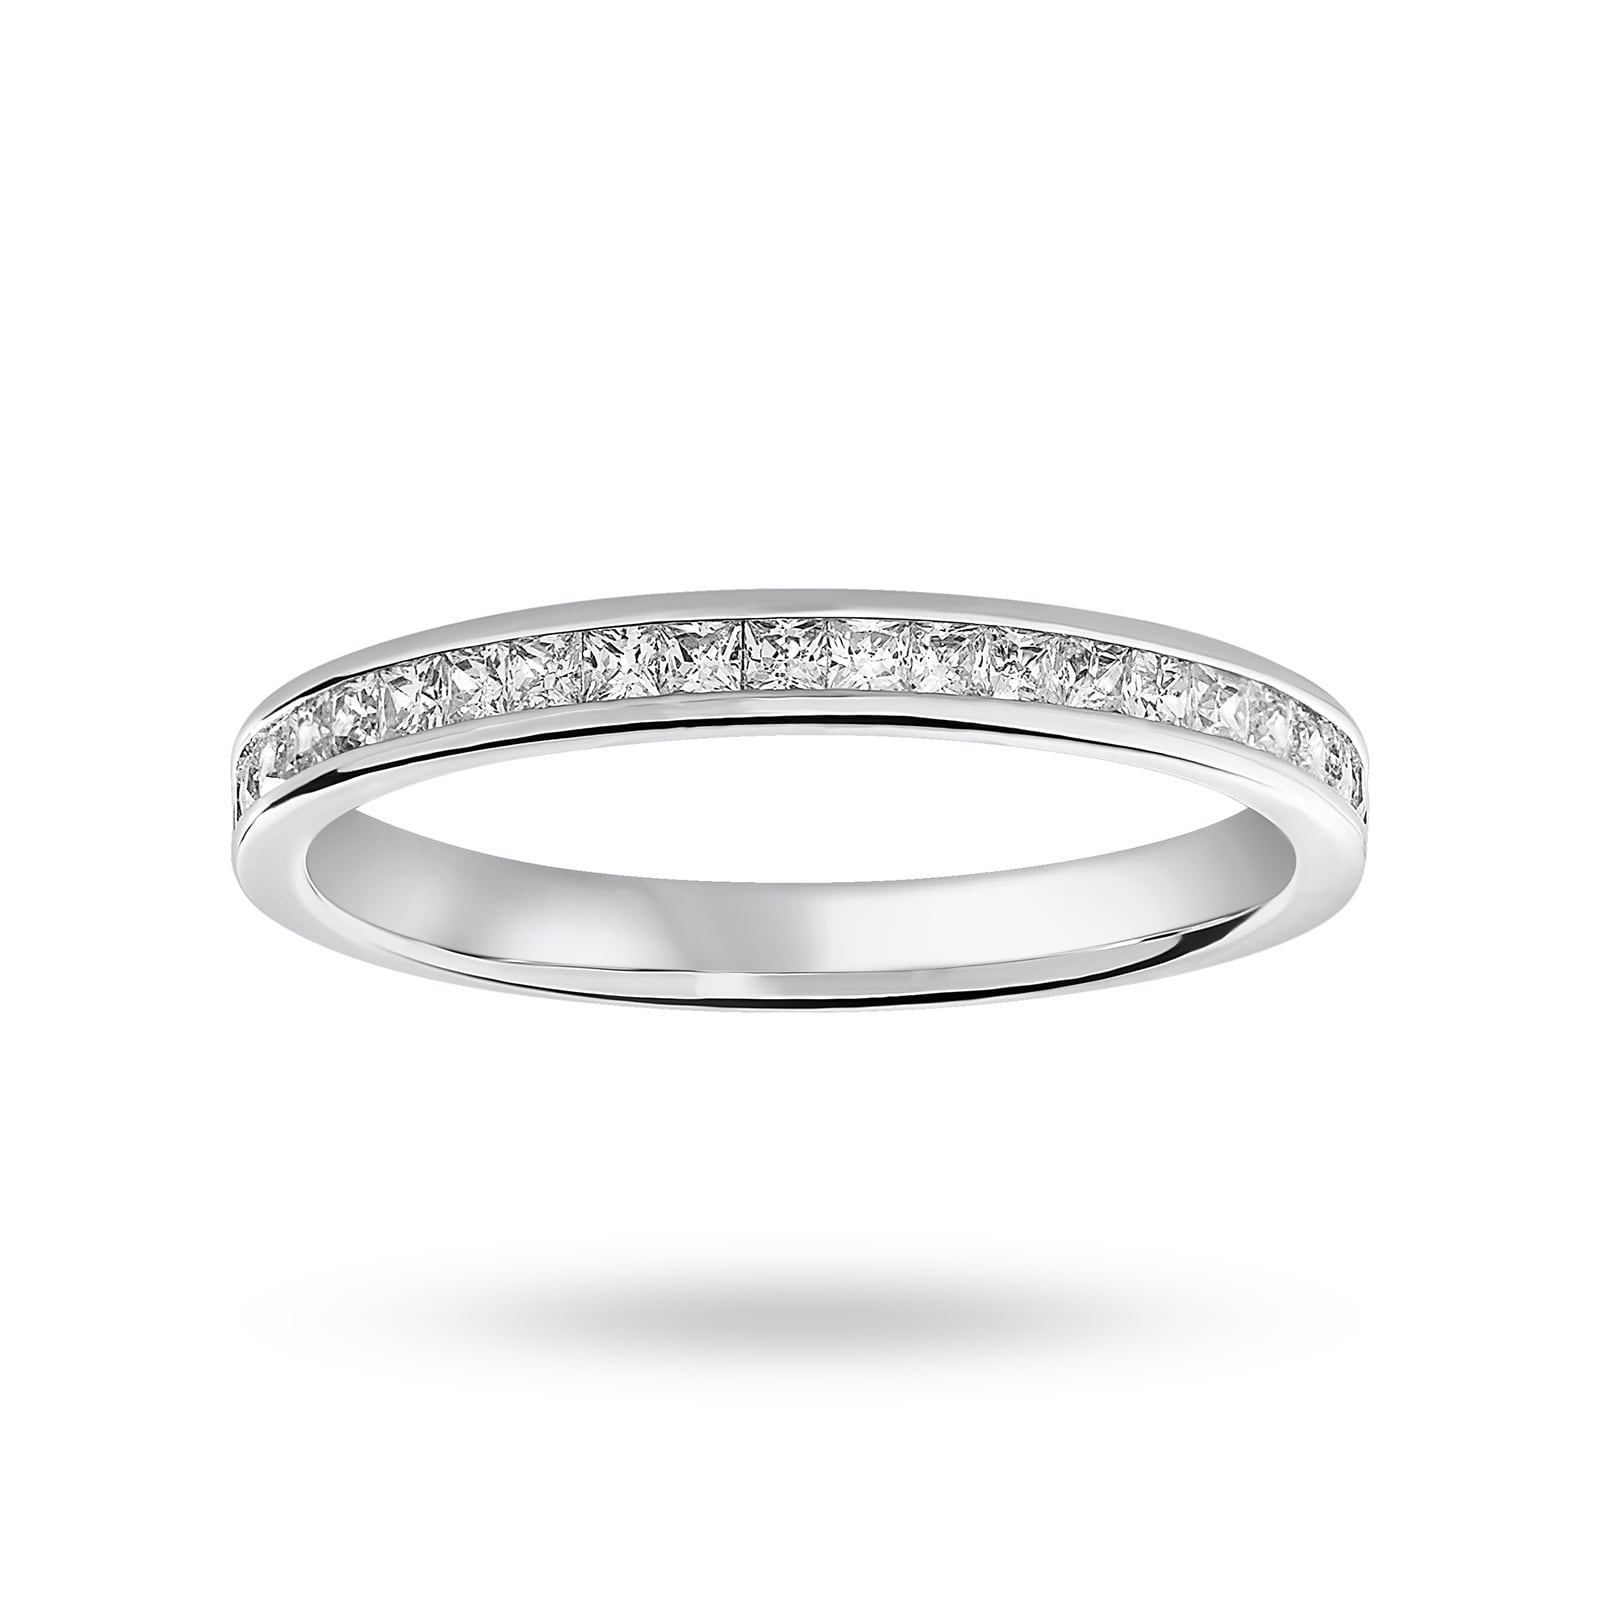 18 Carat White Gold 0.33 Carat Princess Cut Half Eternity Ring - Ring Size J